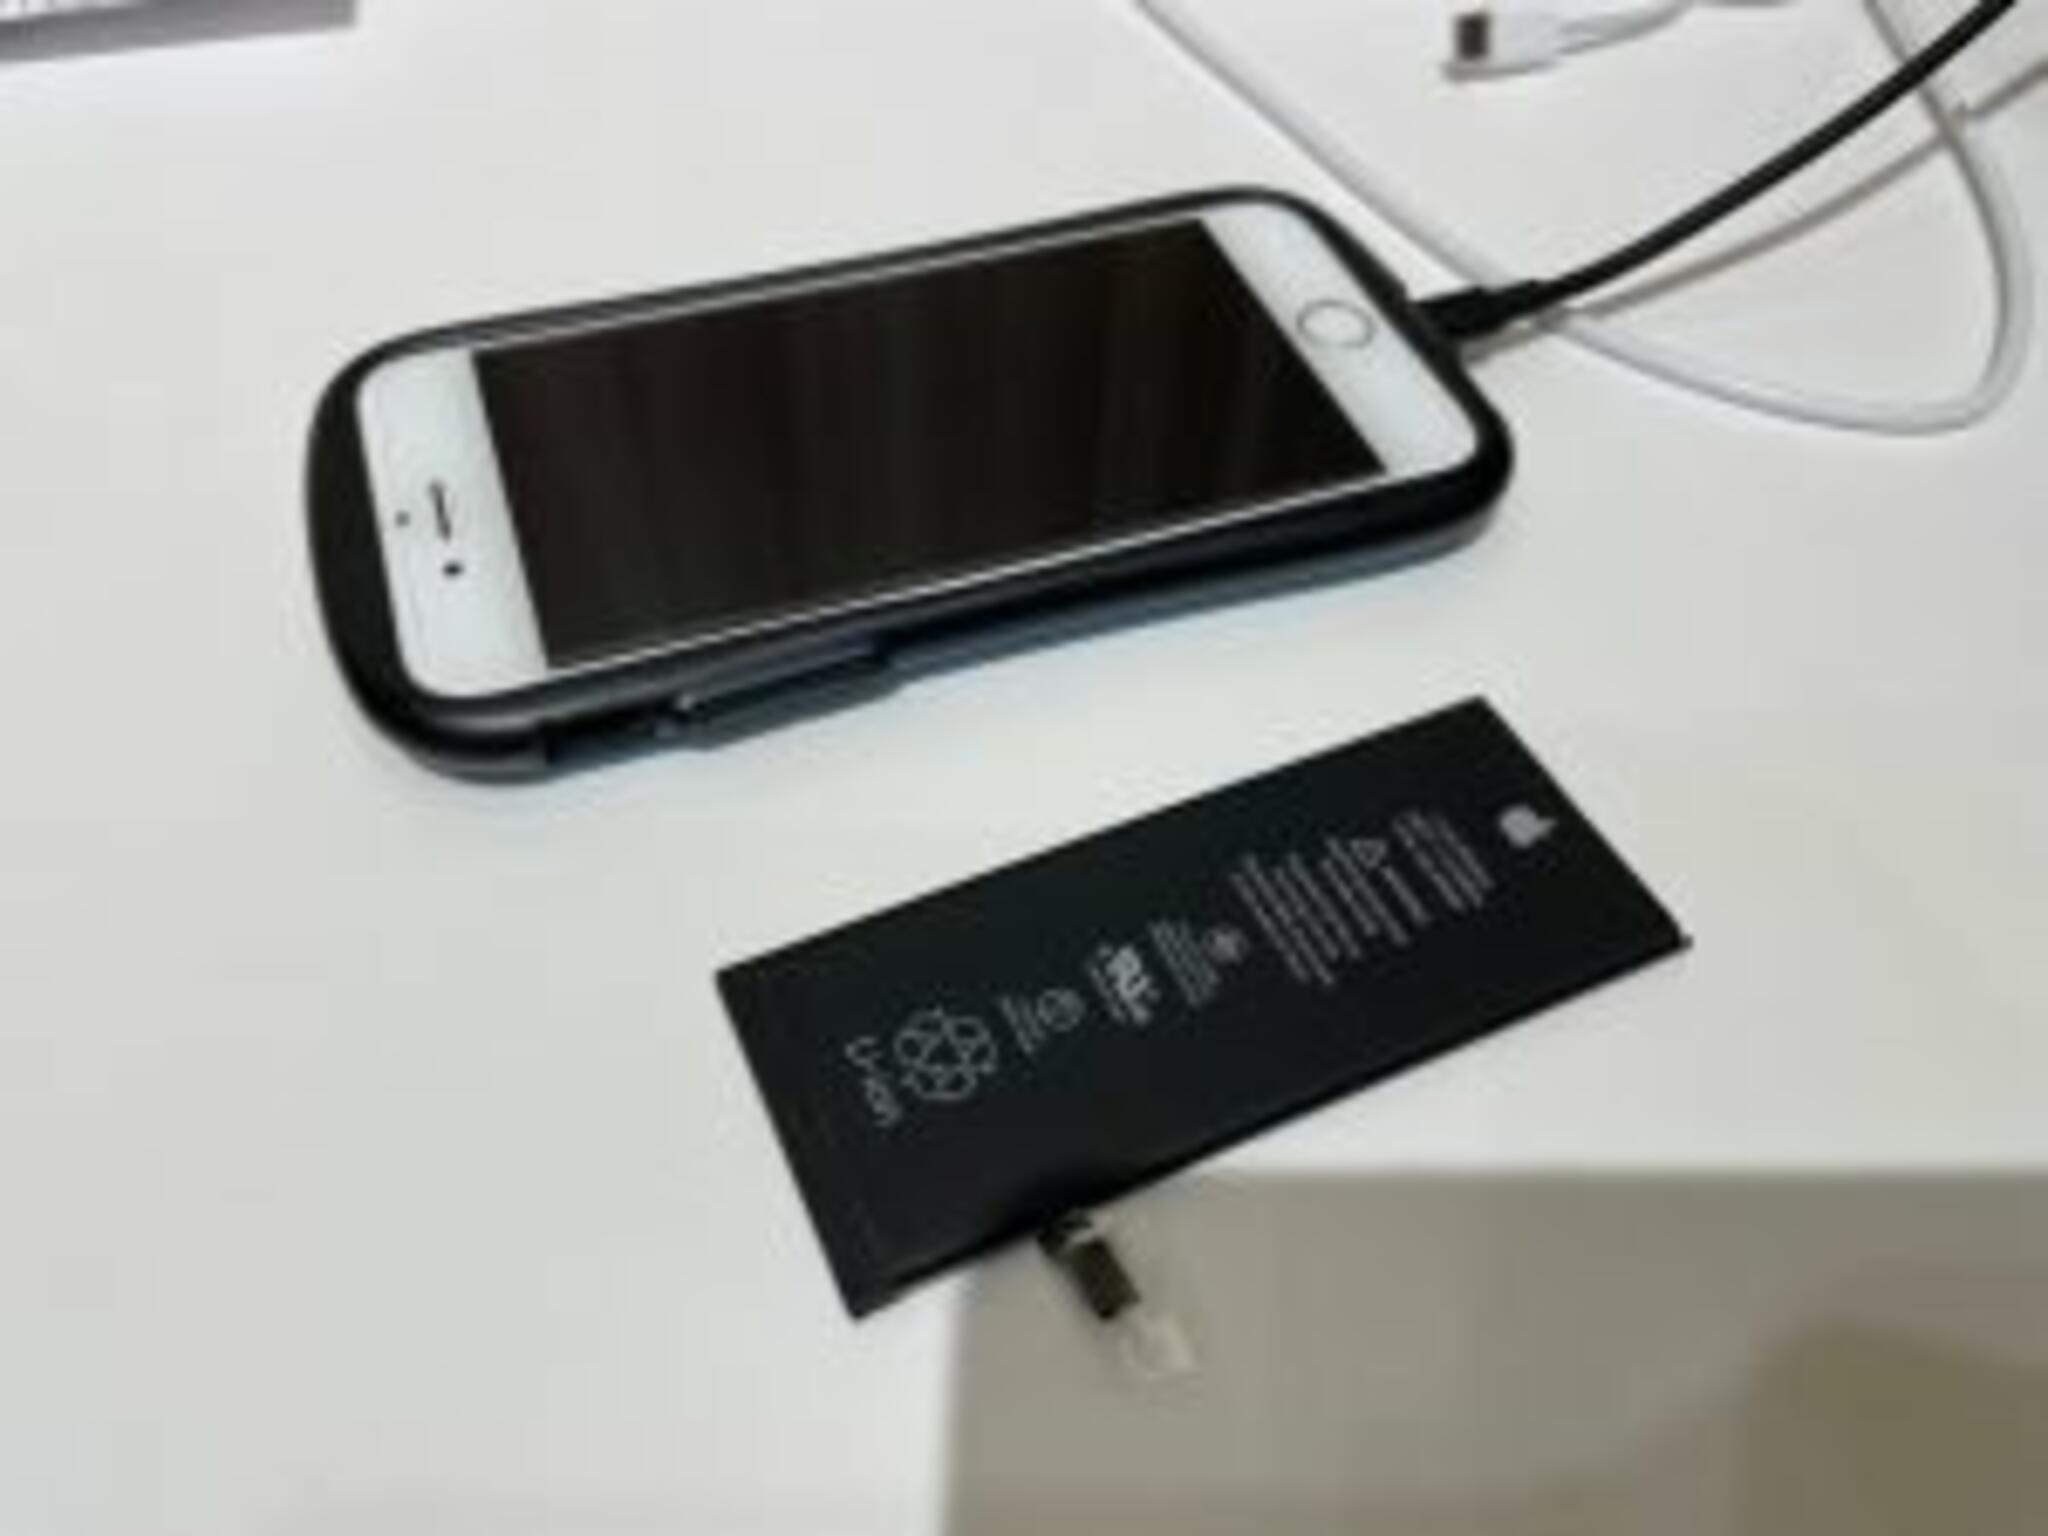 iPhone・iPad・Switch修理店 スマートクール イオンモール広島祇園店からのお知らせ(充電 の減りがはやいと感じたら・・・)に関する写真